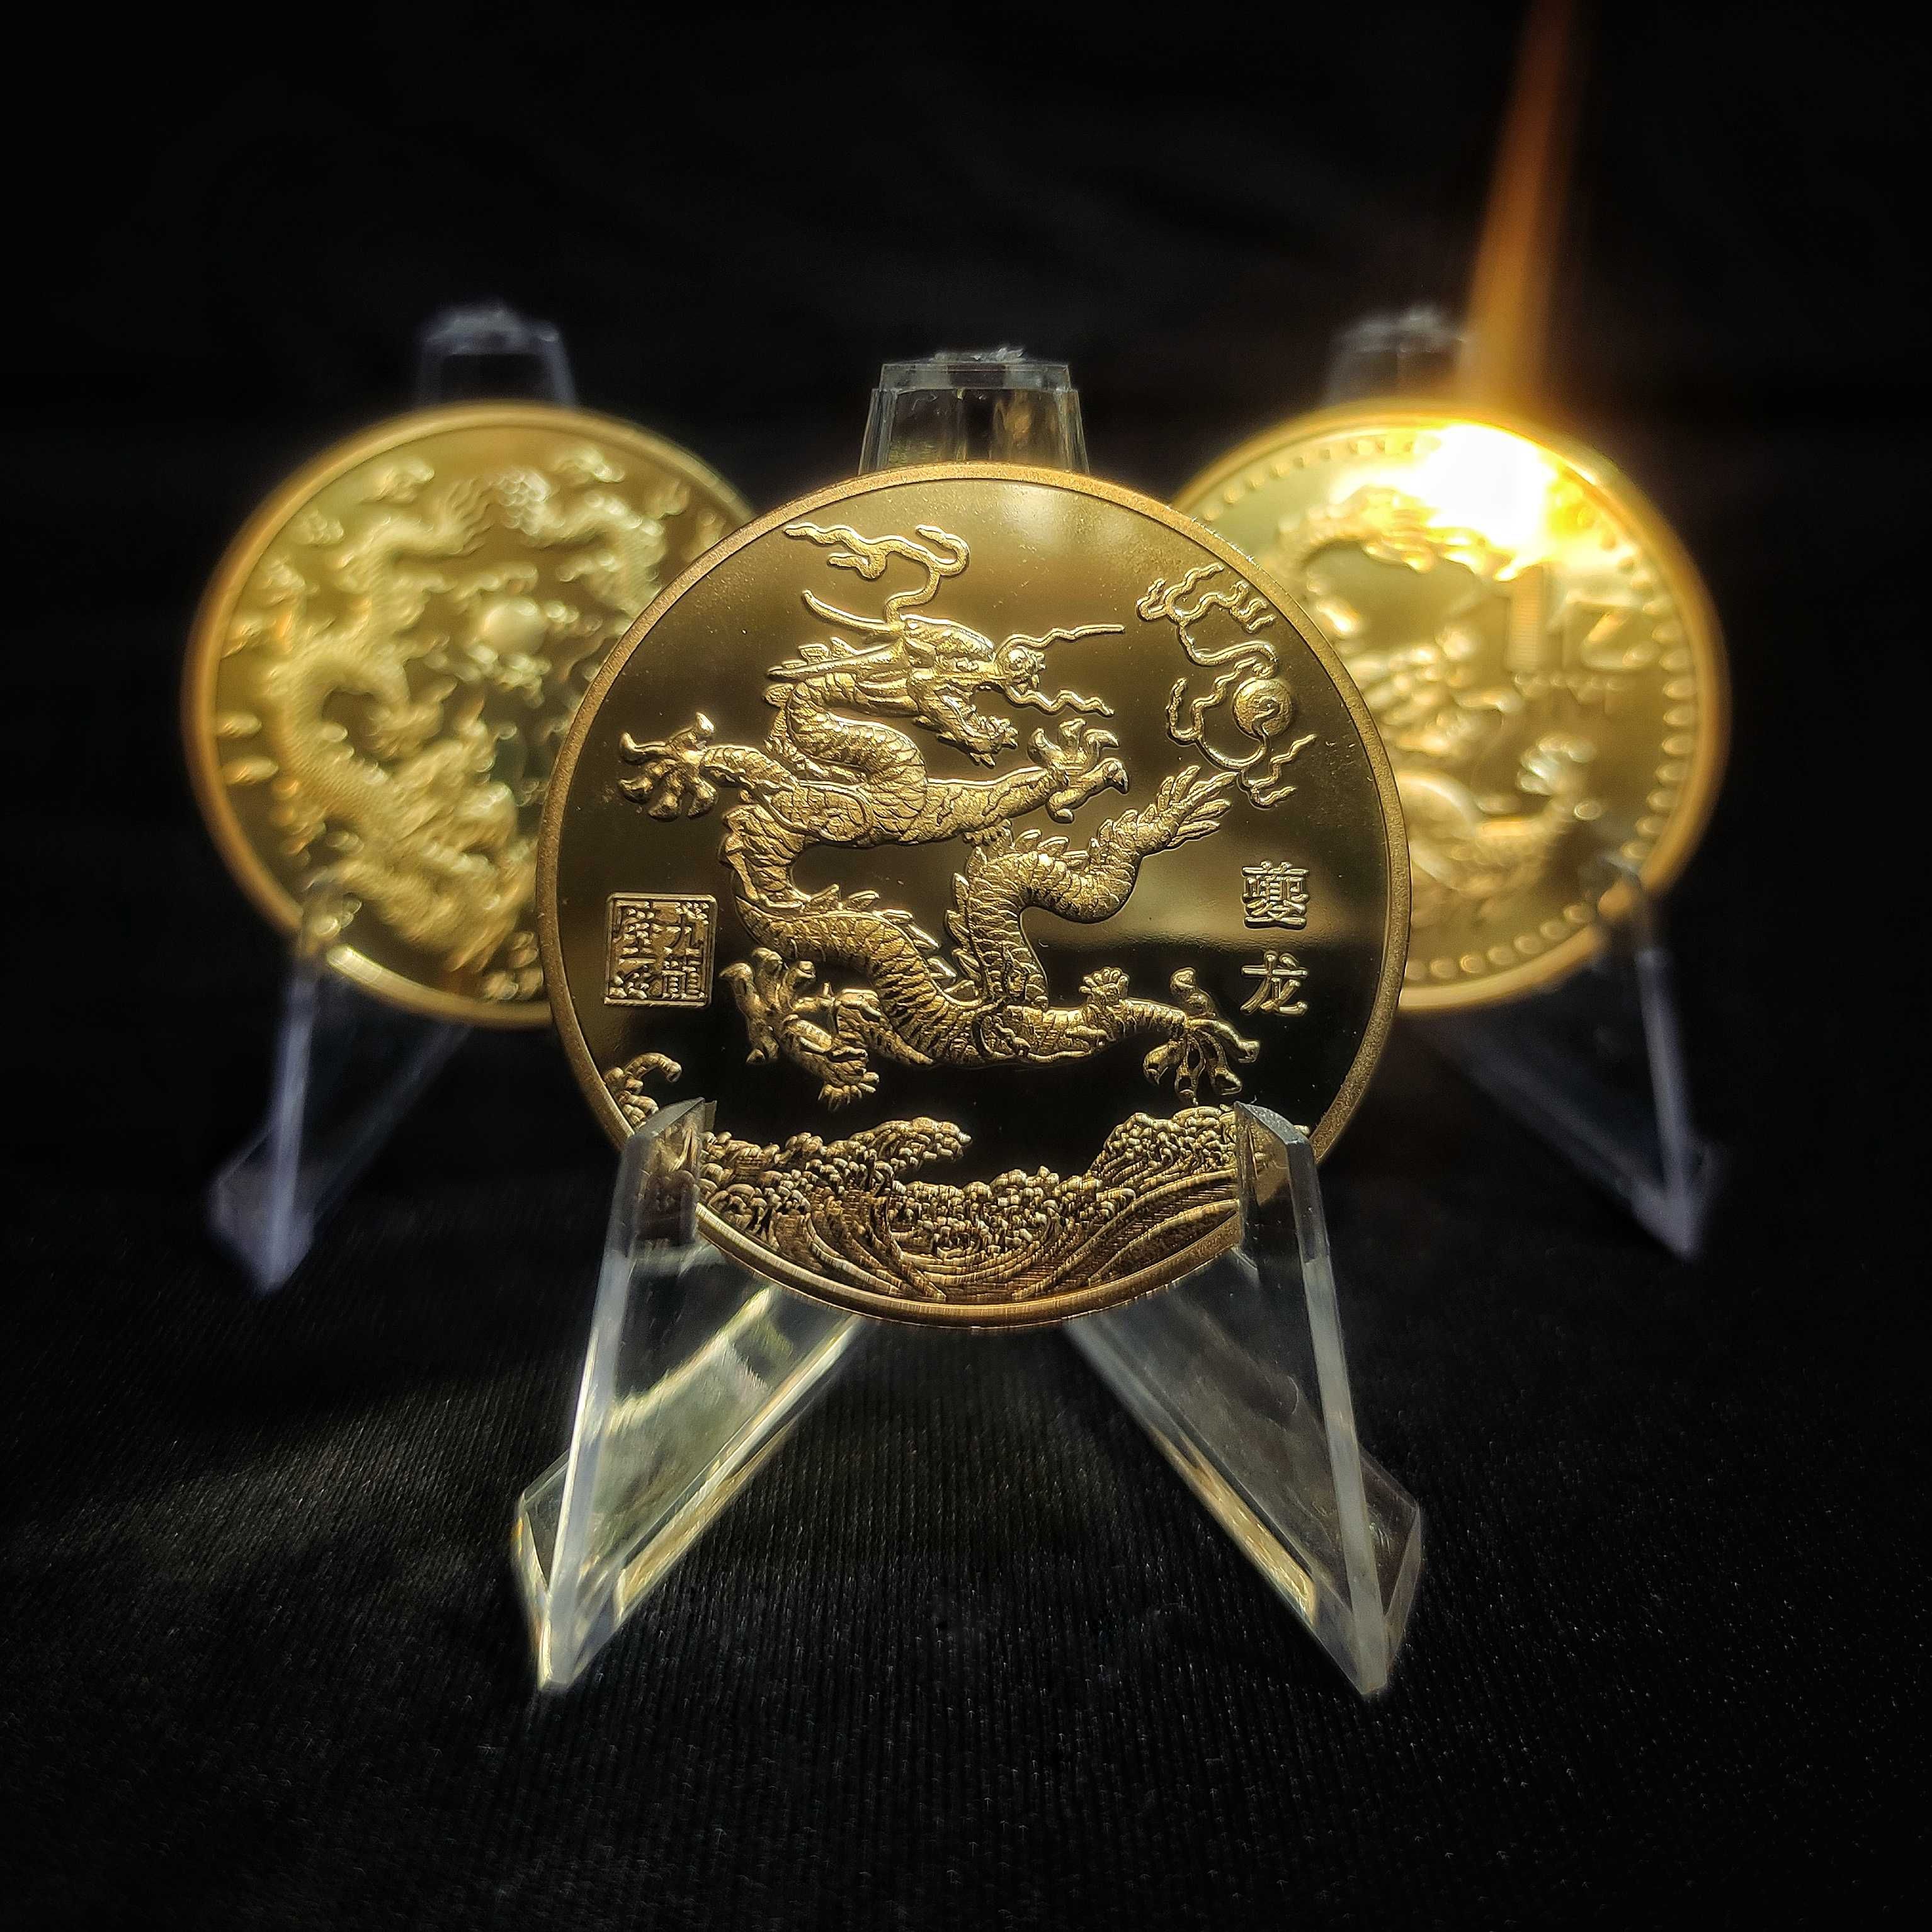 Сувенирные Монеты с Драконом. Chinese dragon - Loong